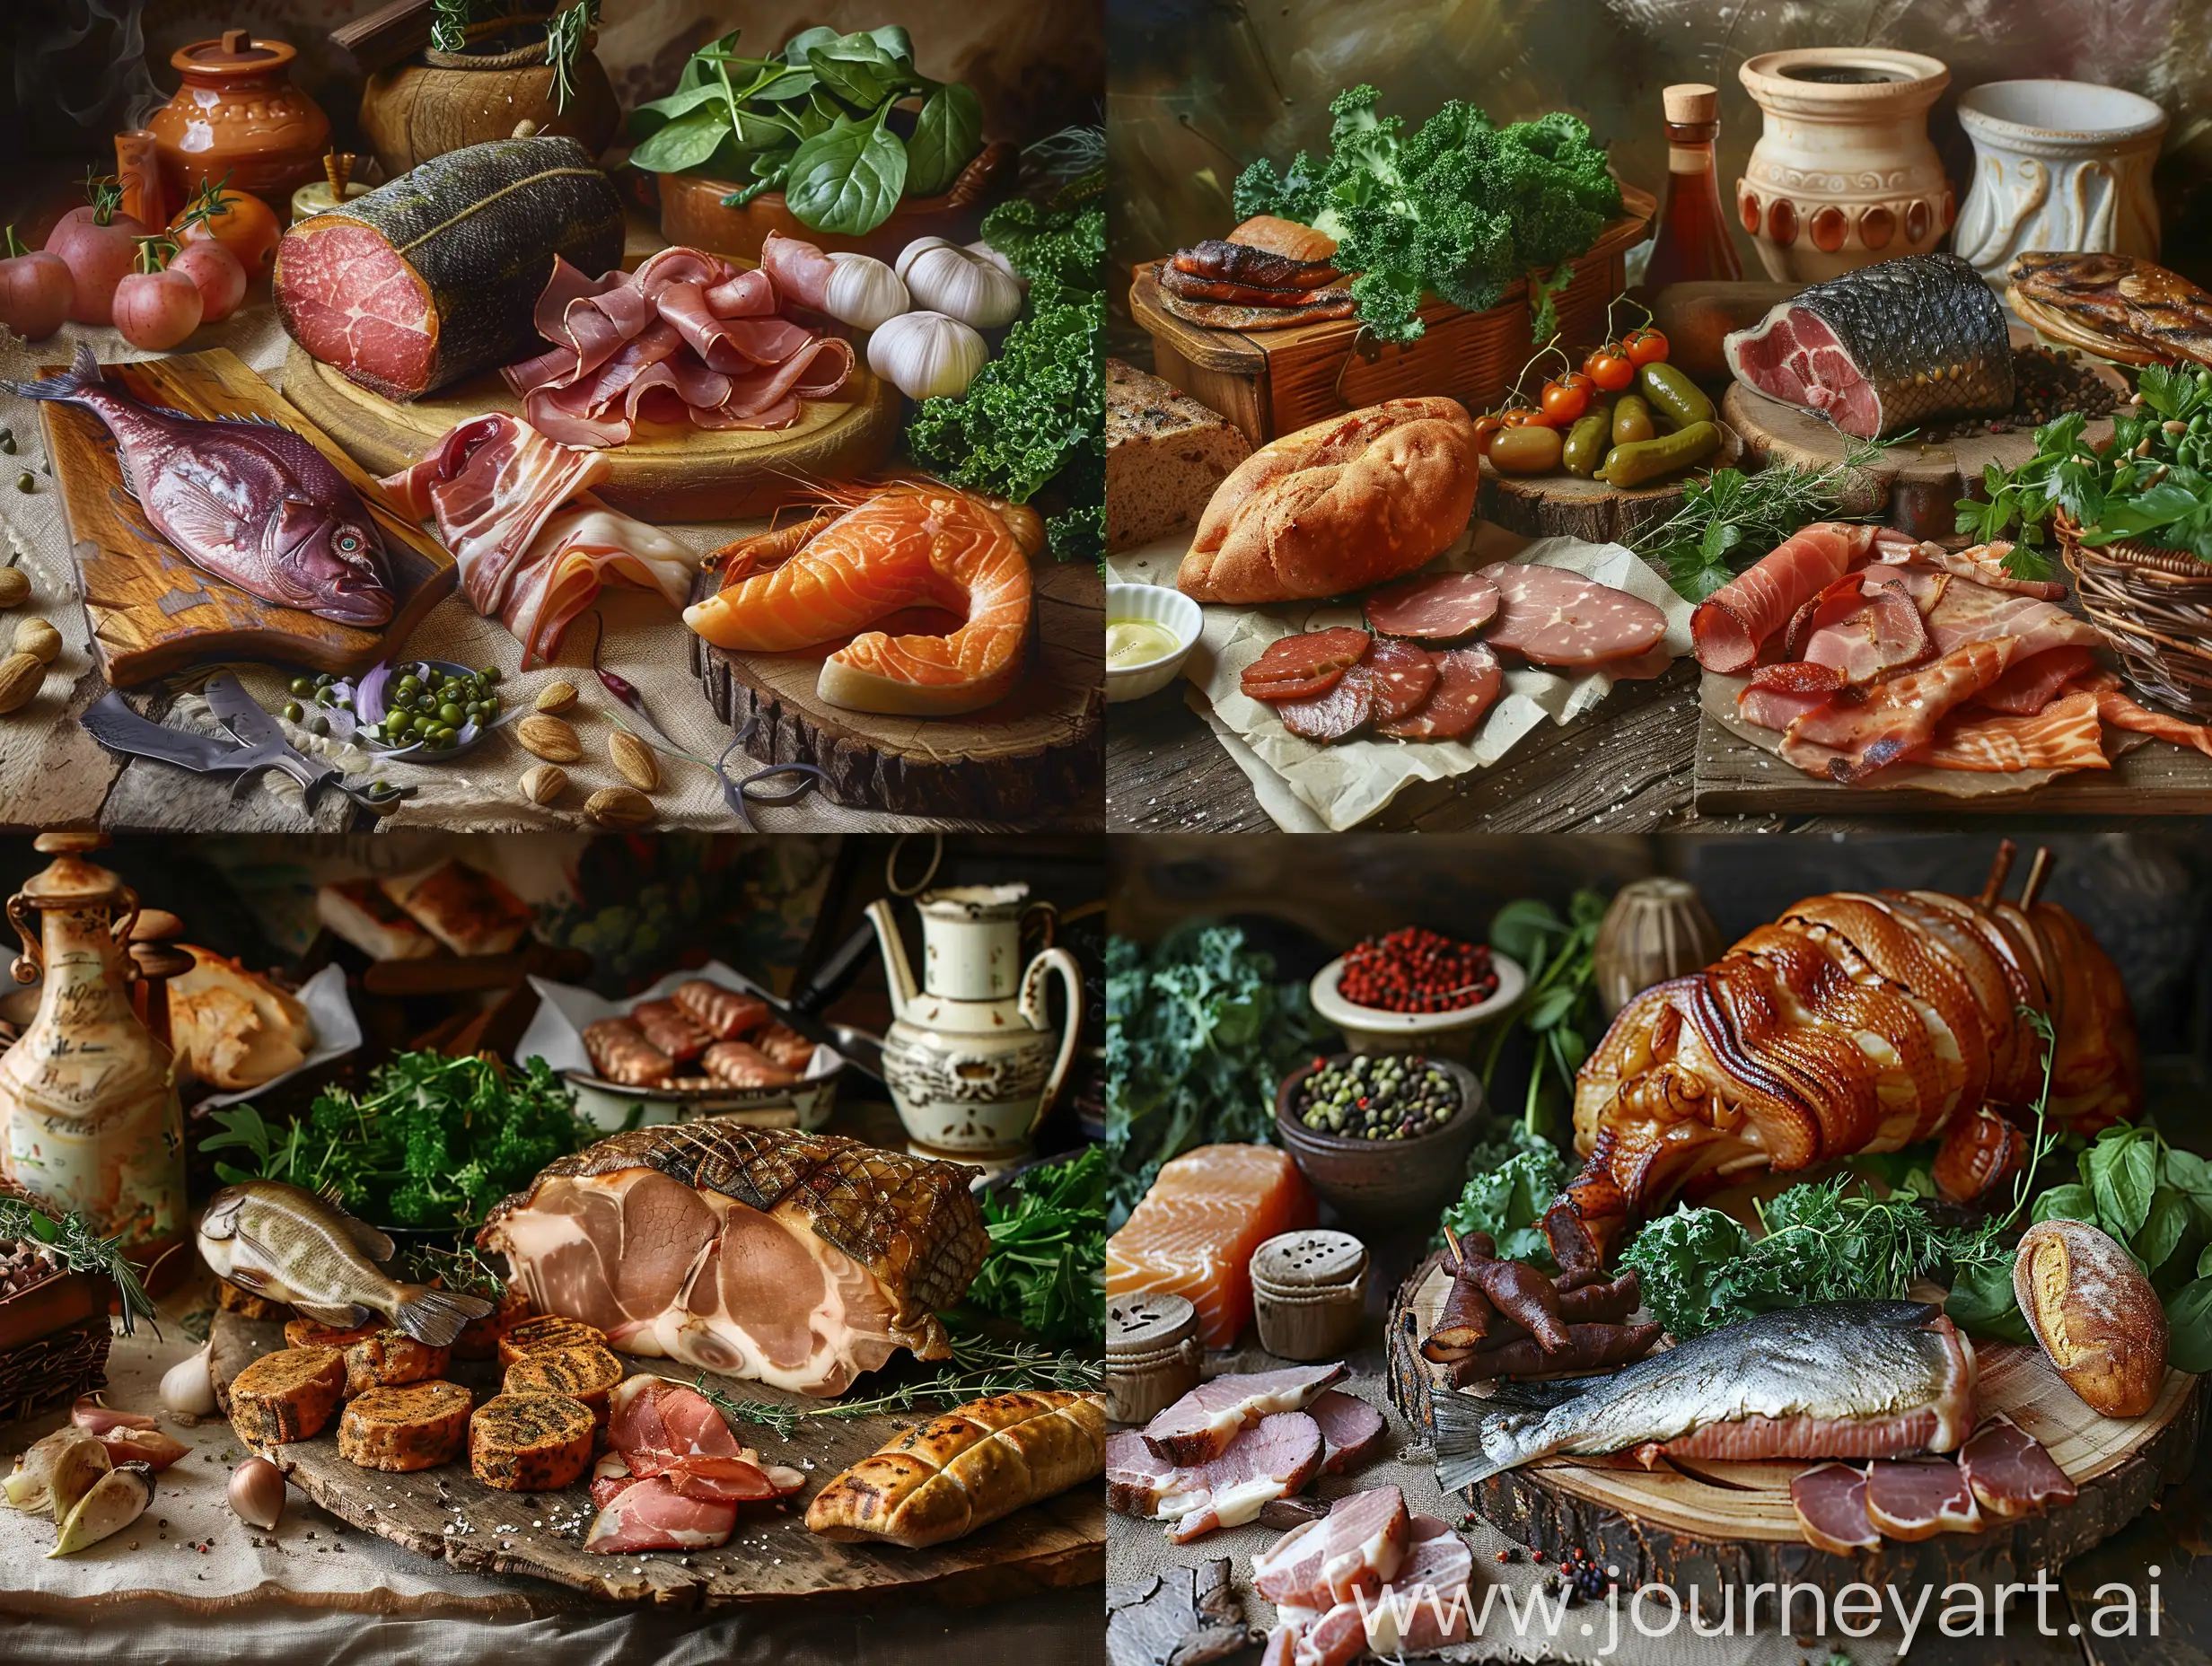 Красивый деревенский стол с домашними копчеными продуктами, мясом, рыбой, зеленью, крупный план, детали, фотореализм, реализм,